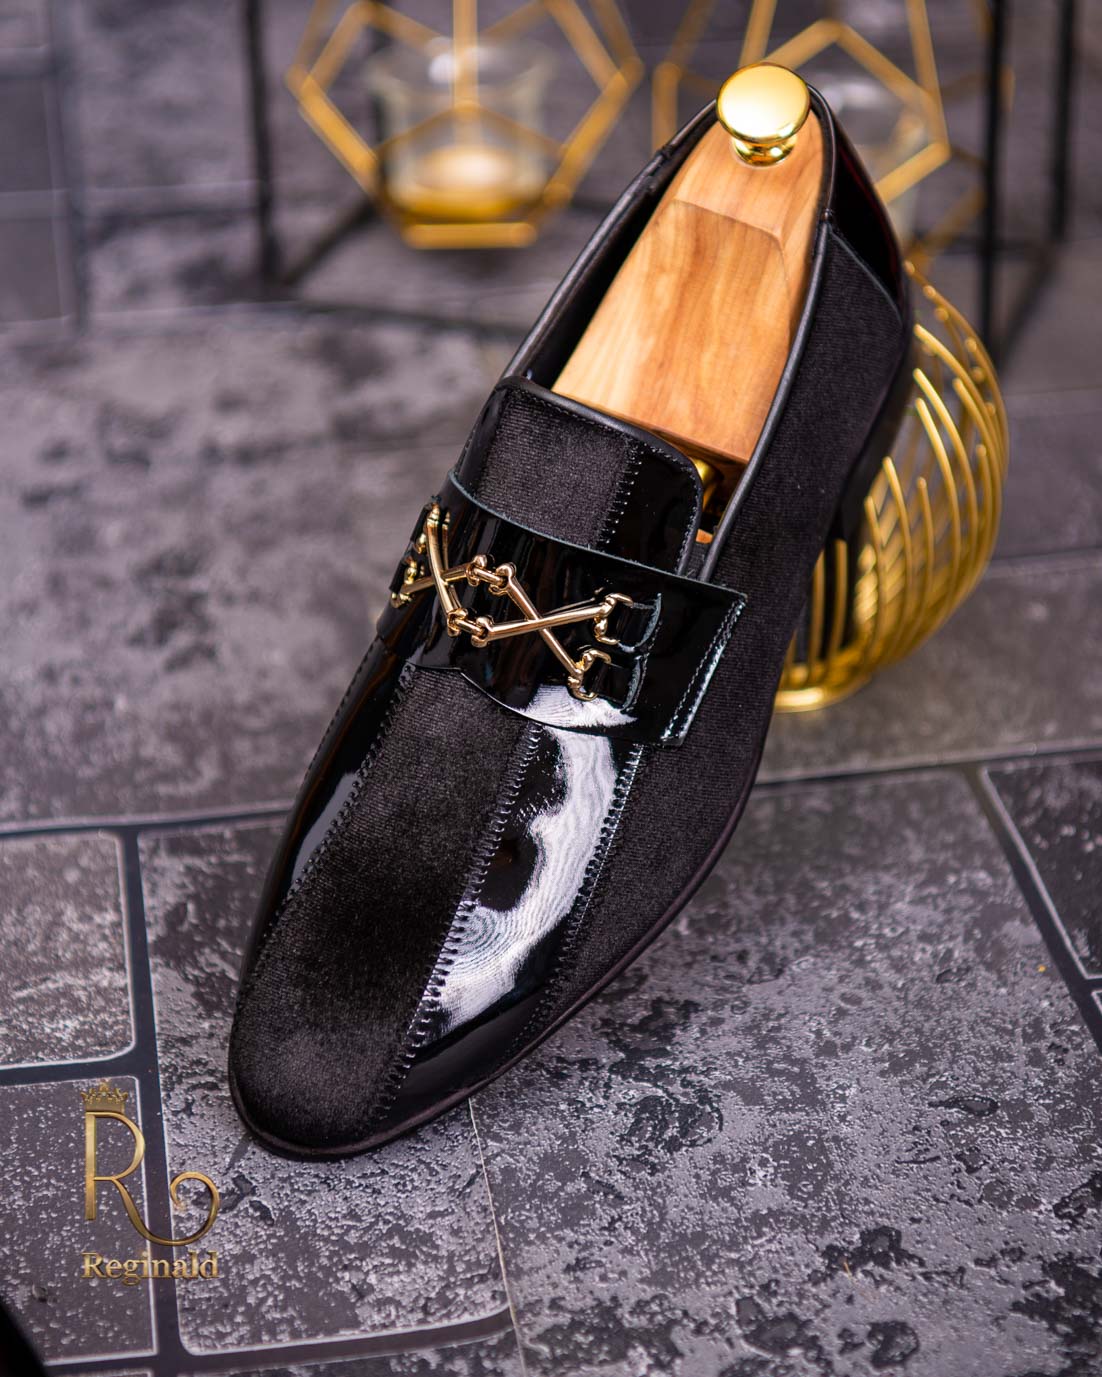 Luksus Decode modtagende Loafers sko til mænd i naturlæder, sort med fløjl - P1351